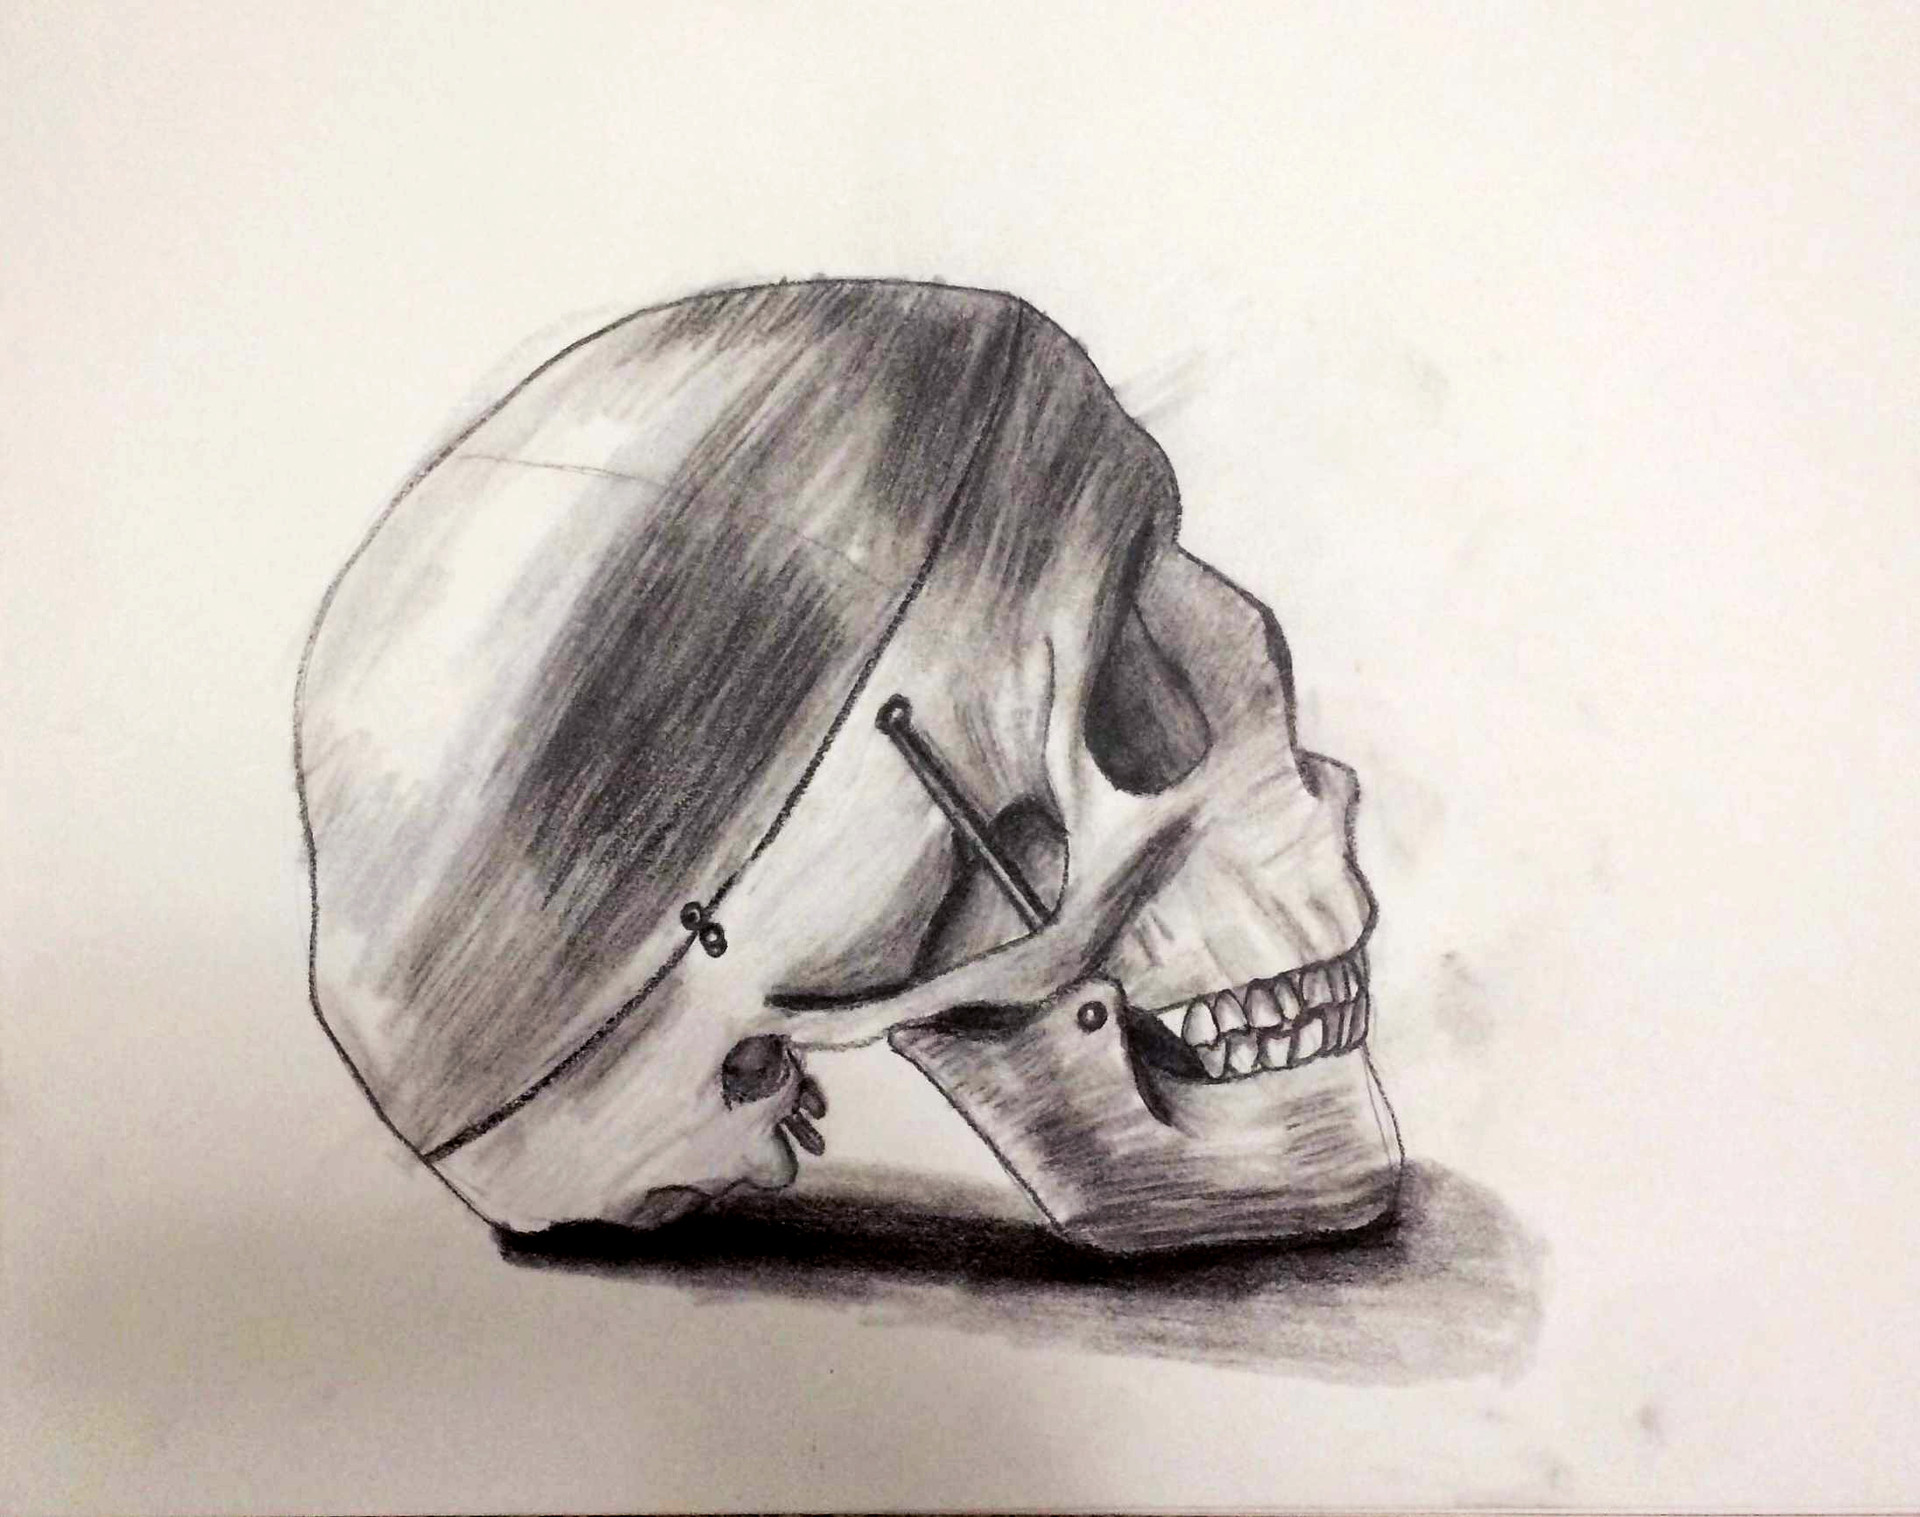 ArtStation - Studies of a Skull